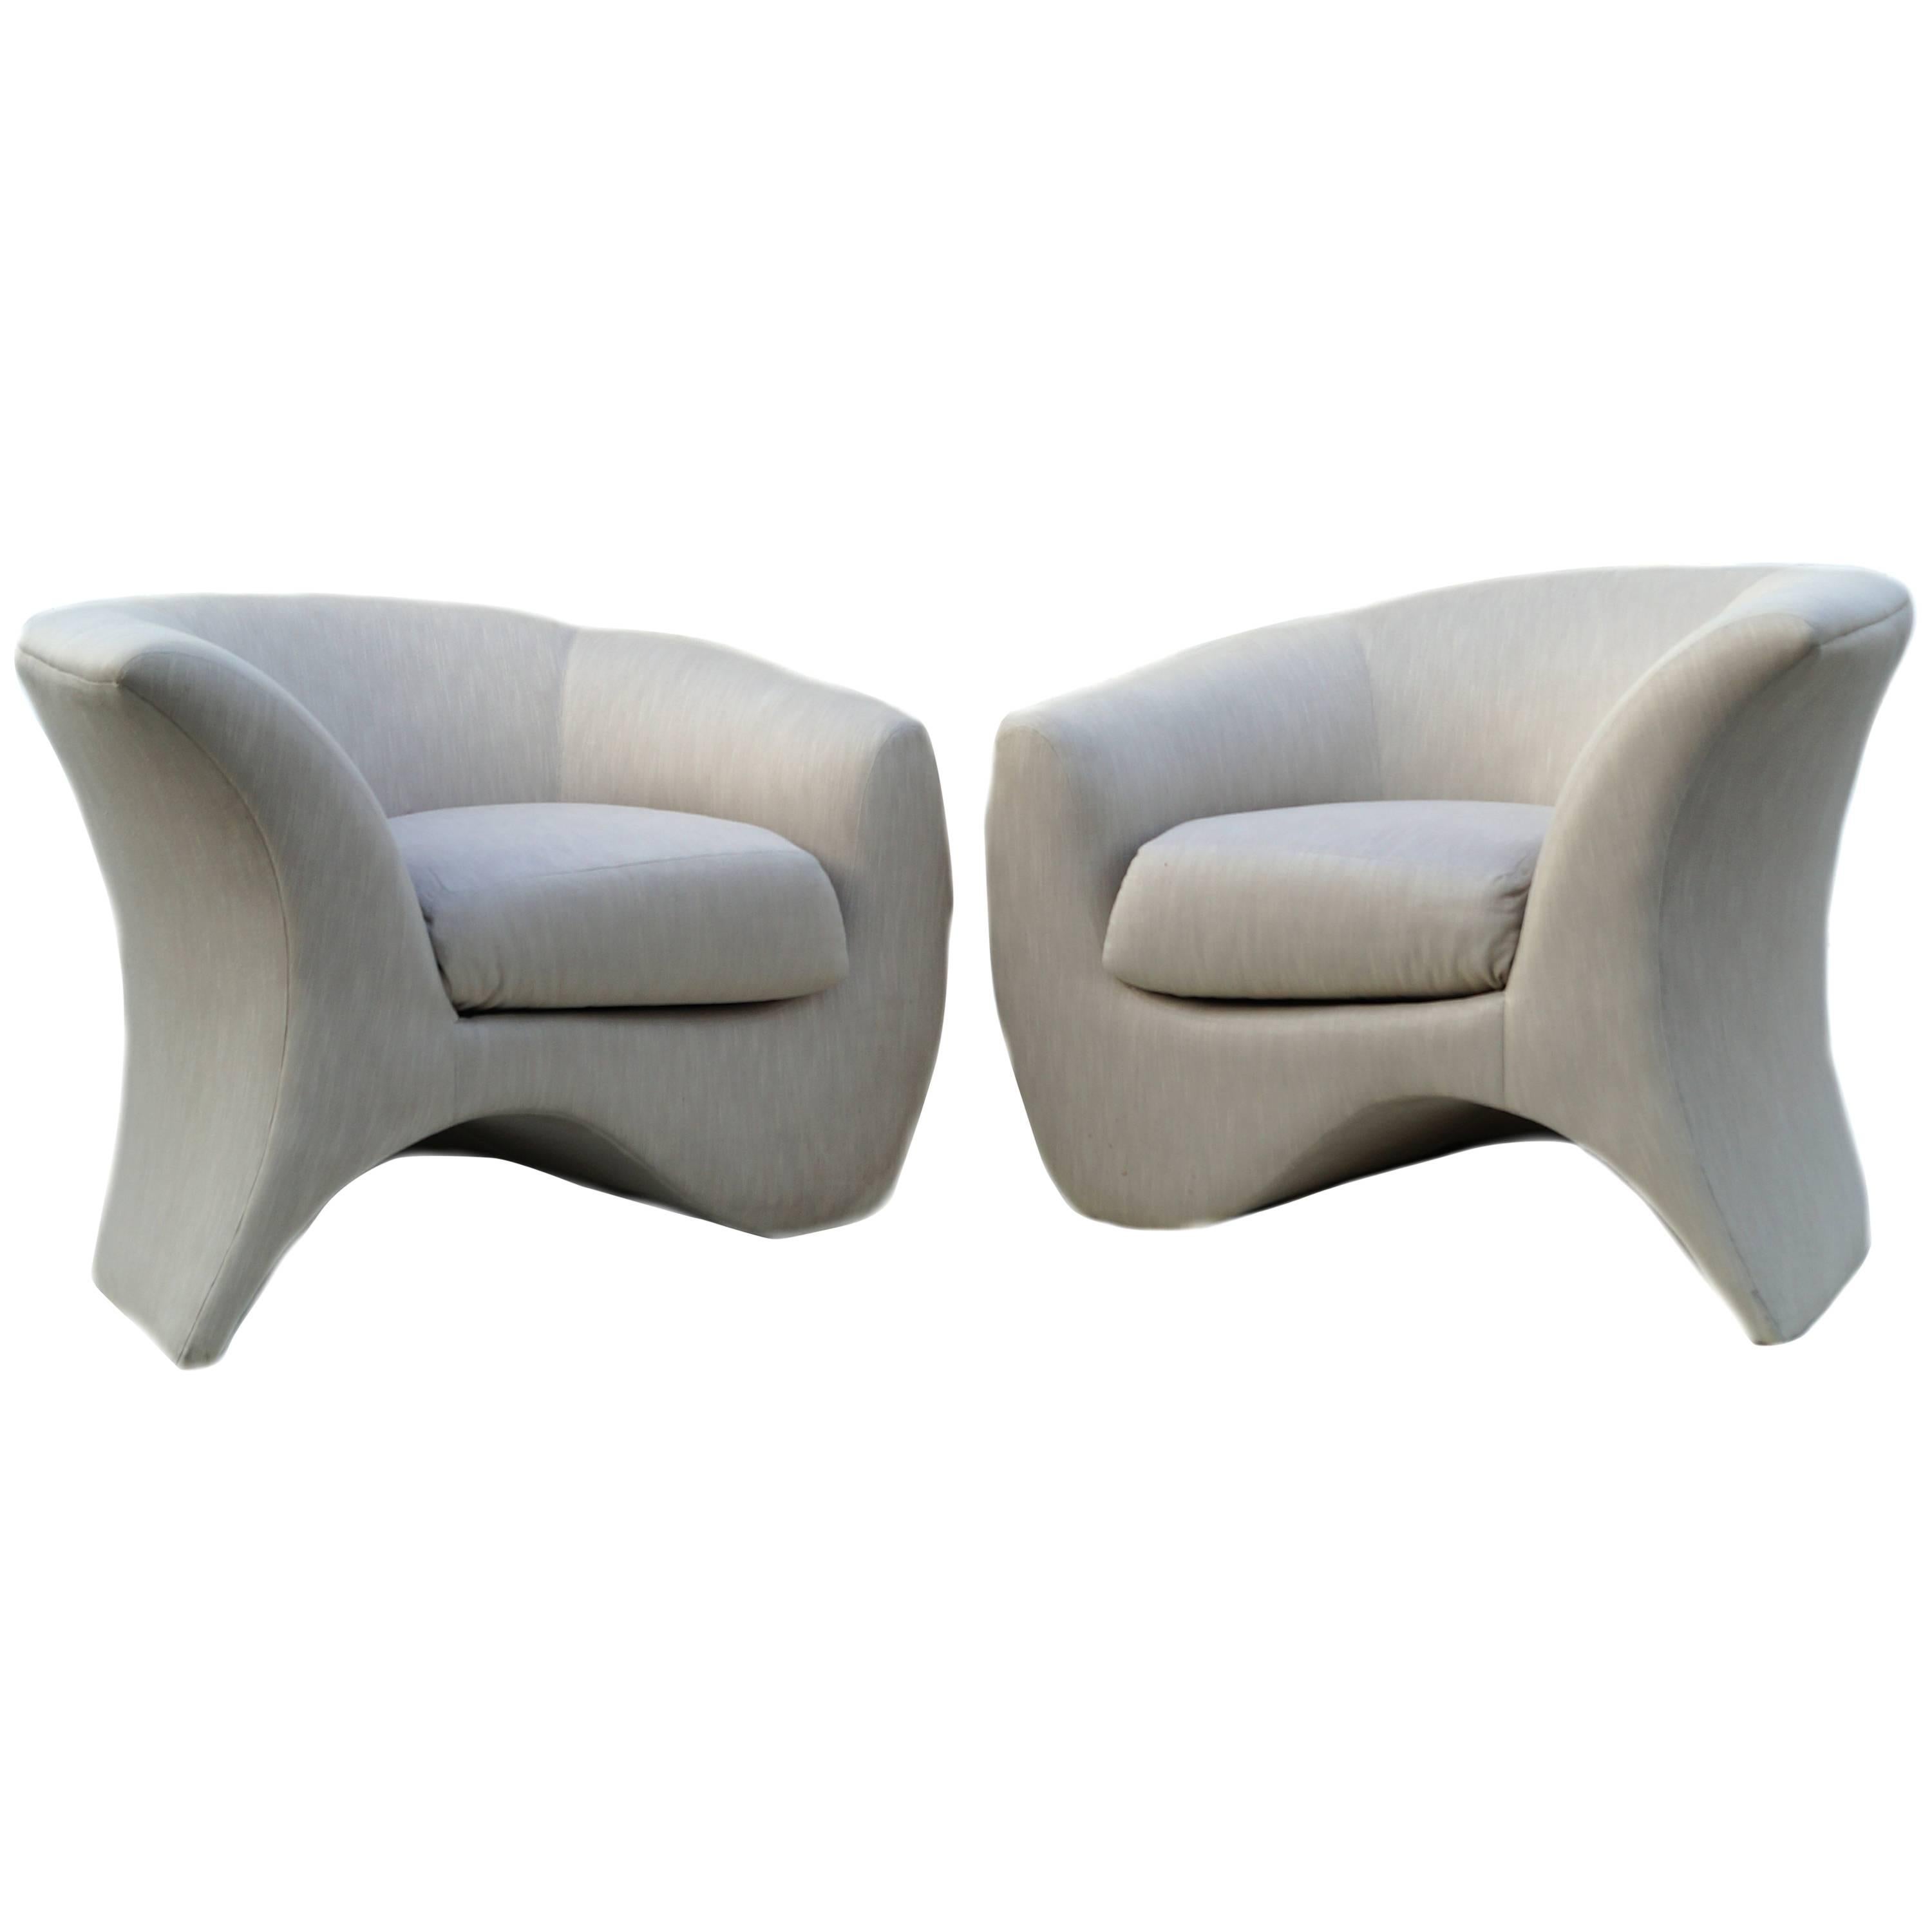 Pair of Vladimir Kagan Sculptural Hurricane Lounge Club Chairs